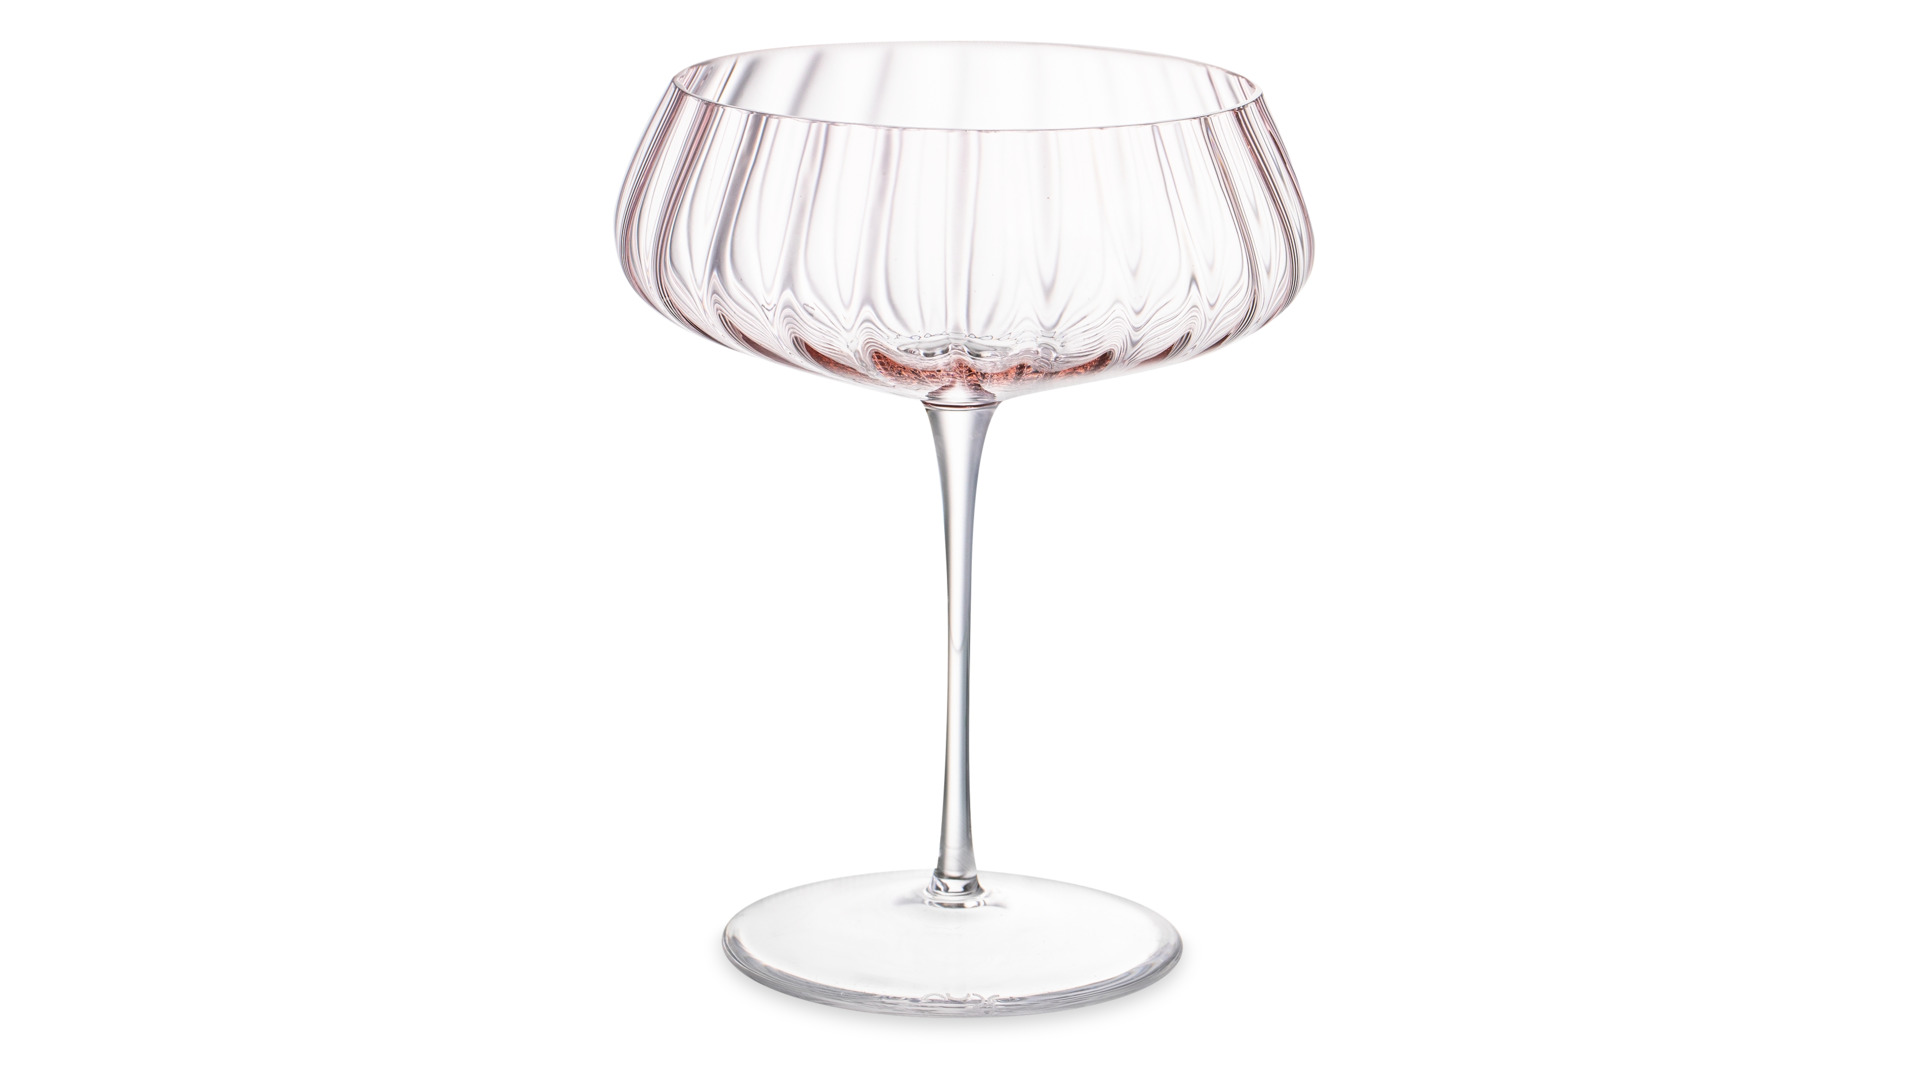 Набор креманок для шампанского Nude Glass Round UP Dusty Rose 400 мл, 2 шт, стекло хрустальное, розо